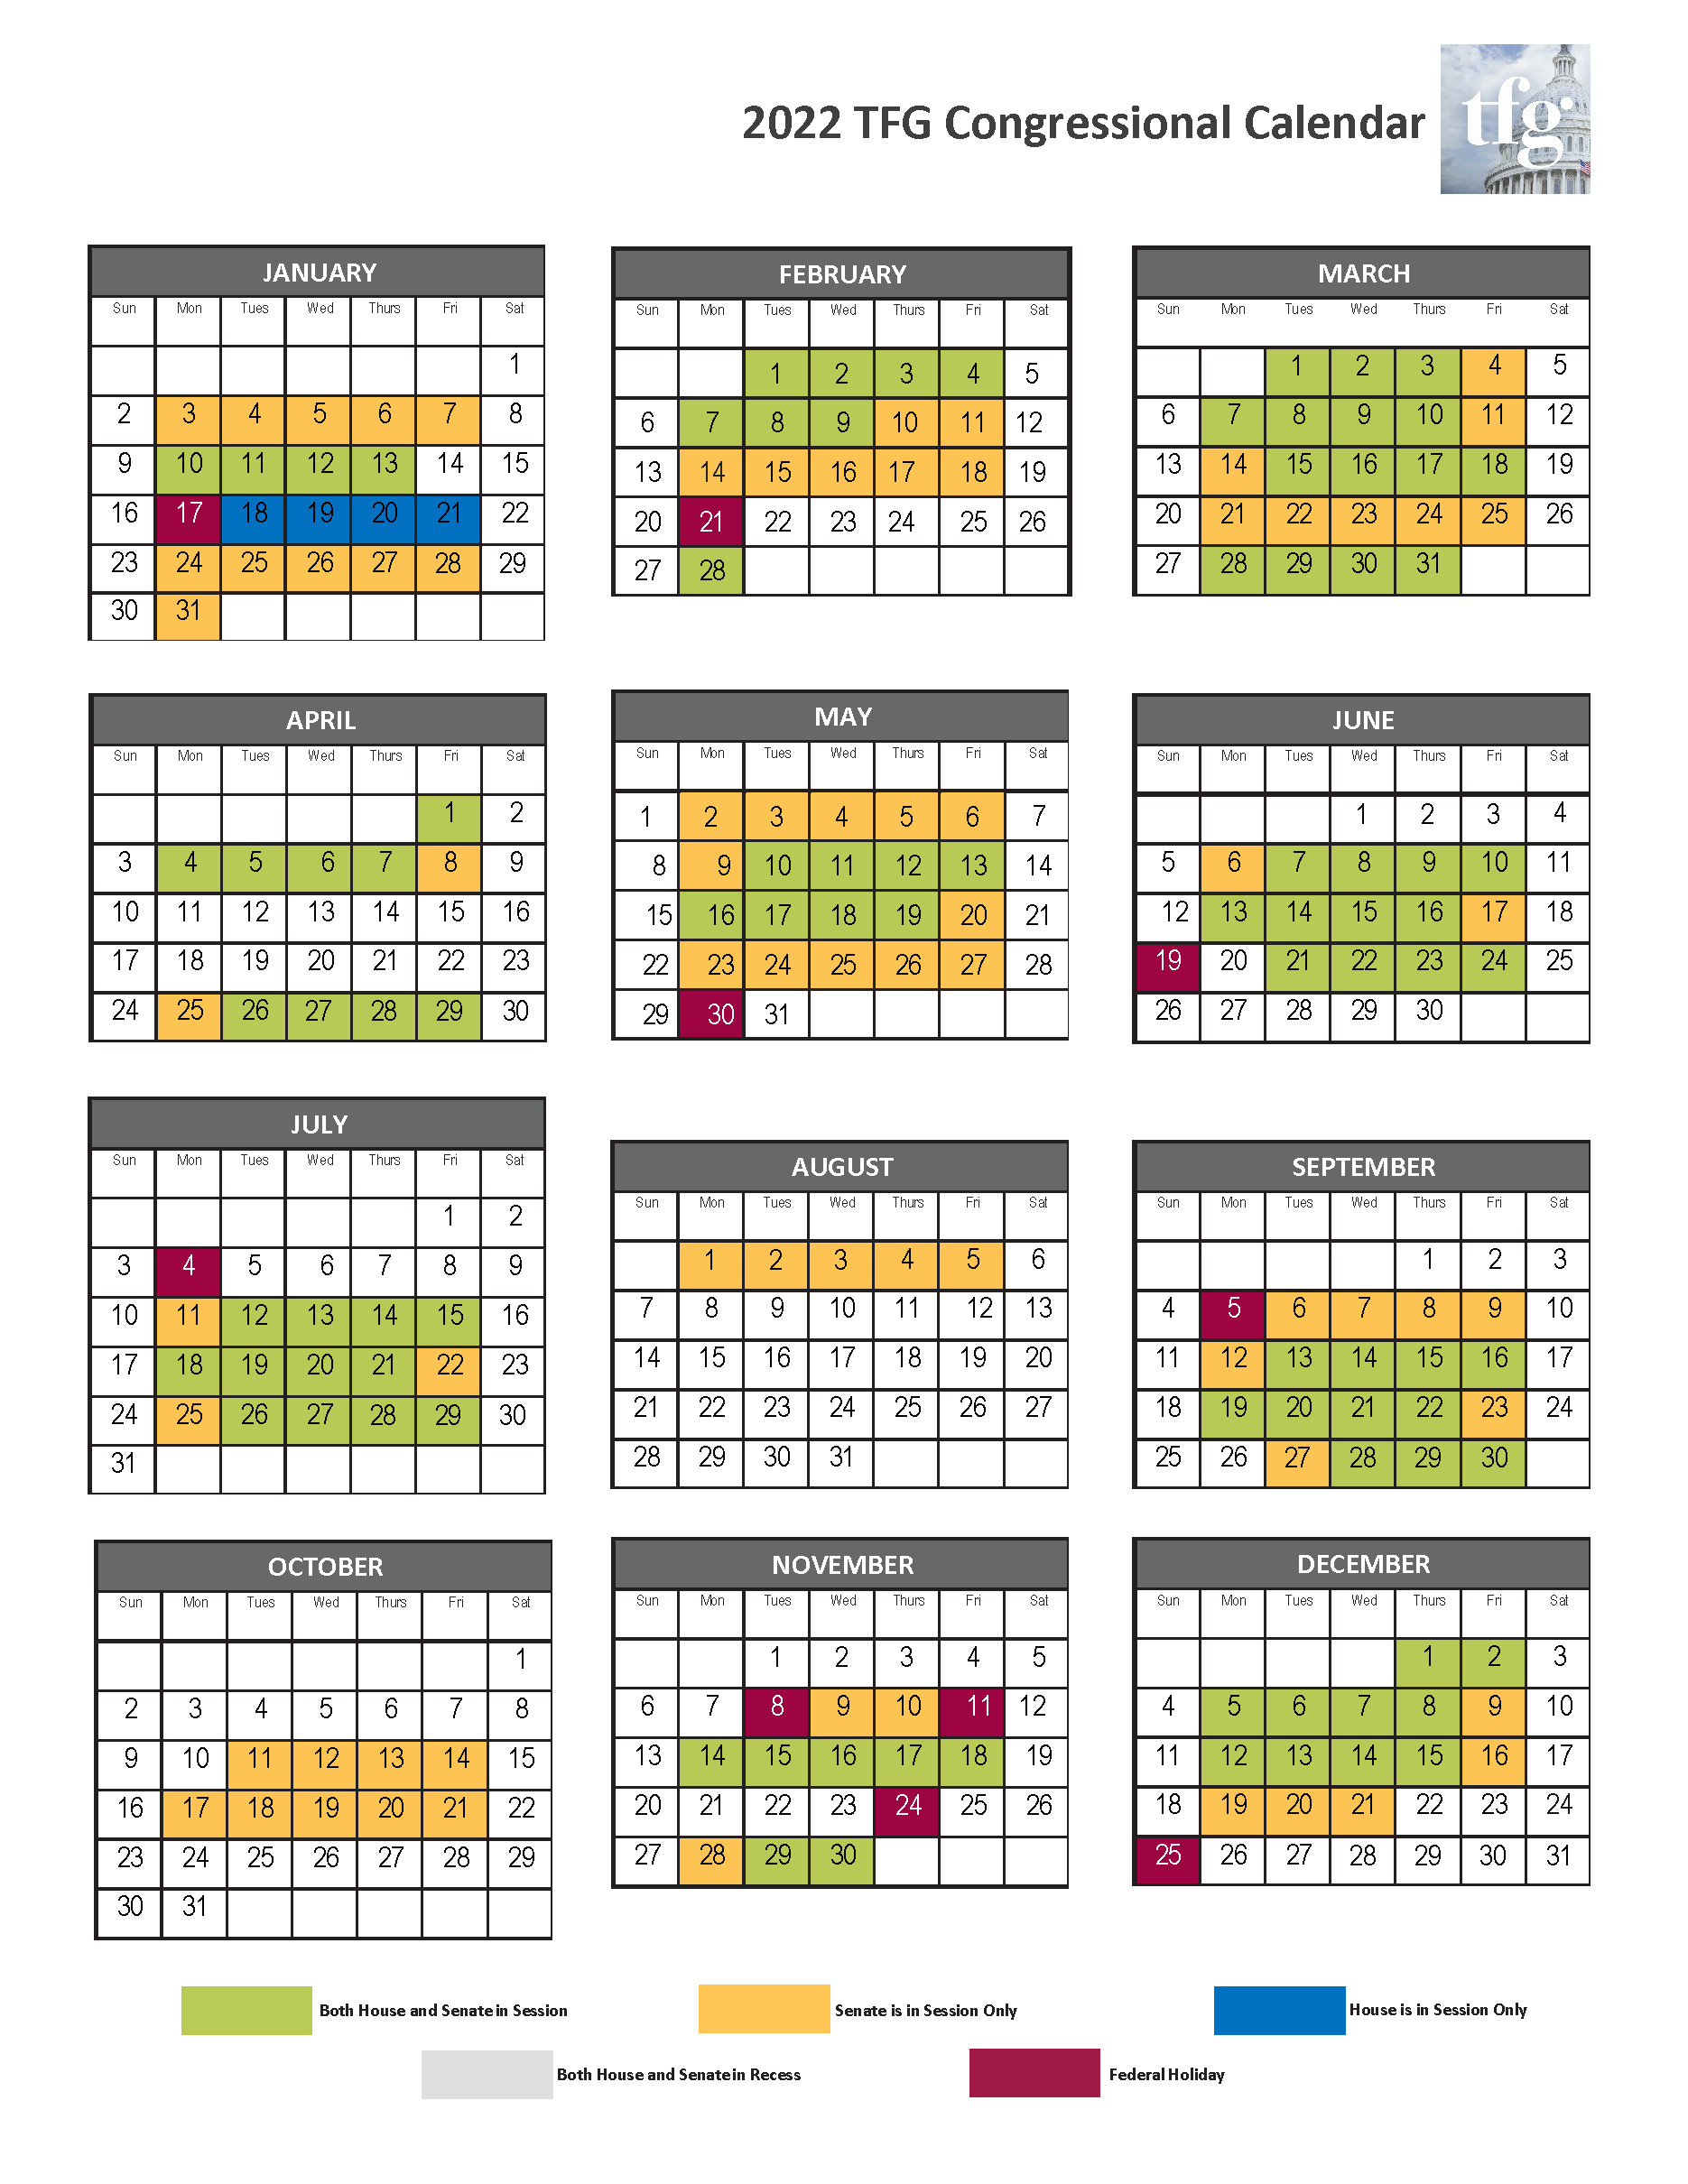 Congressional Calendar 2022 Senate.2022 Congressional Calendar